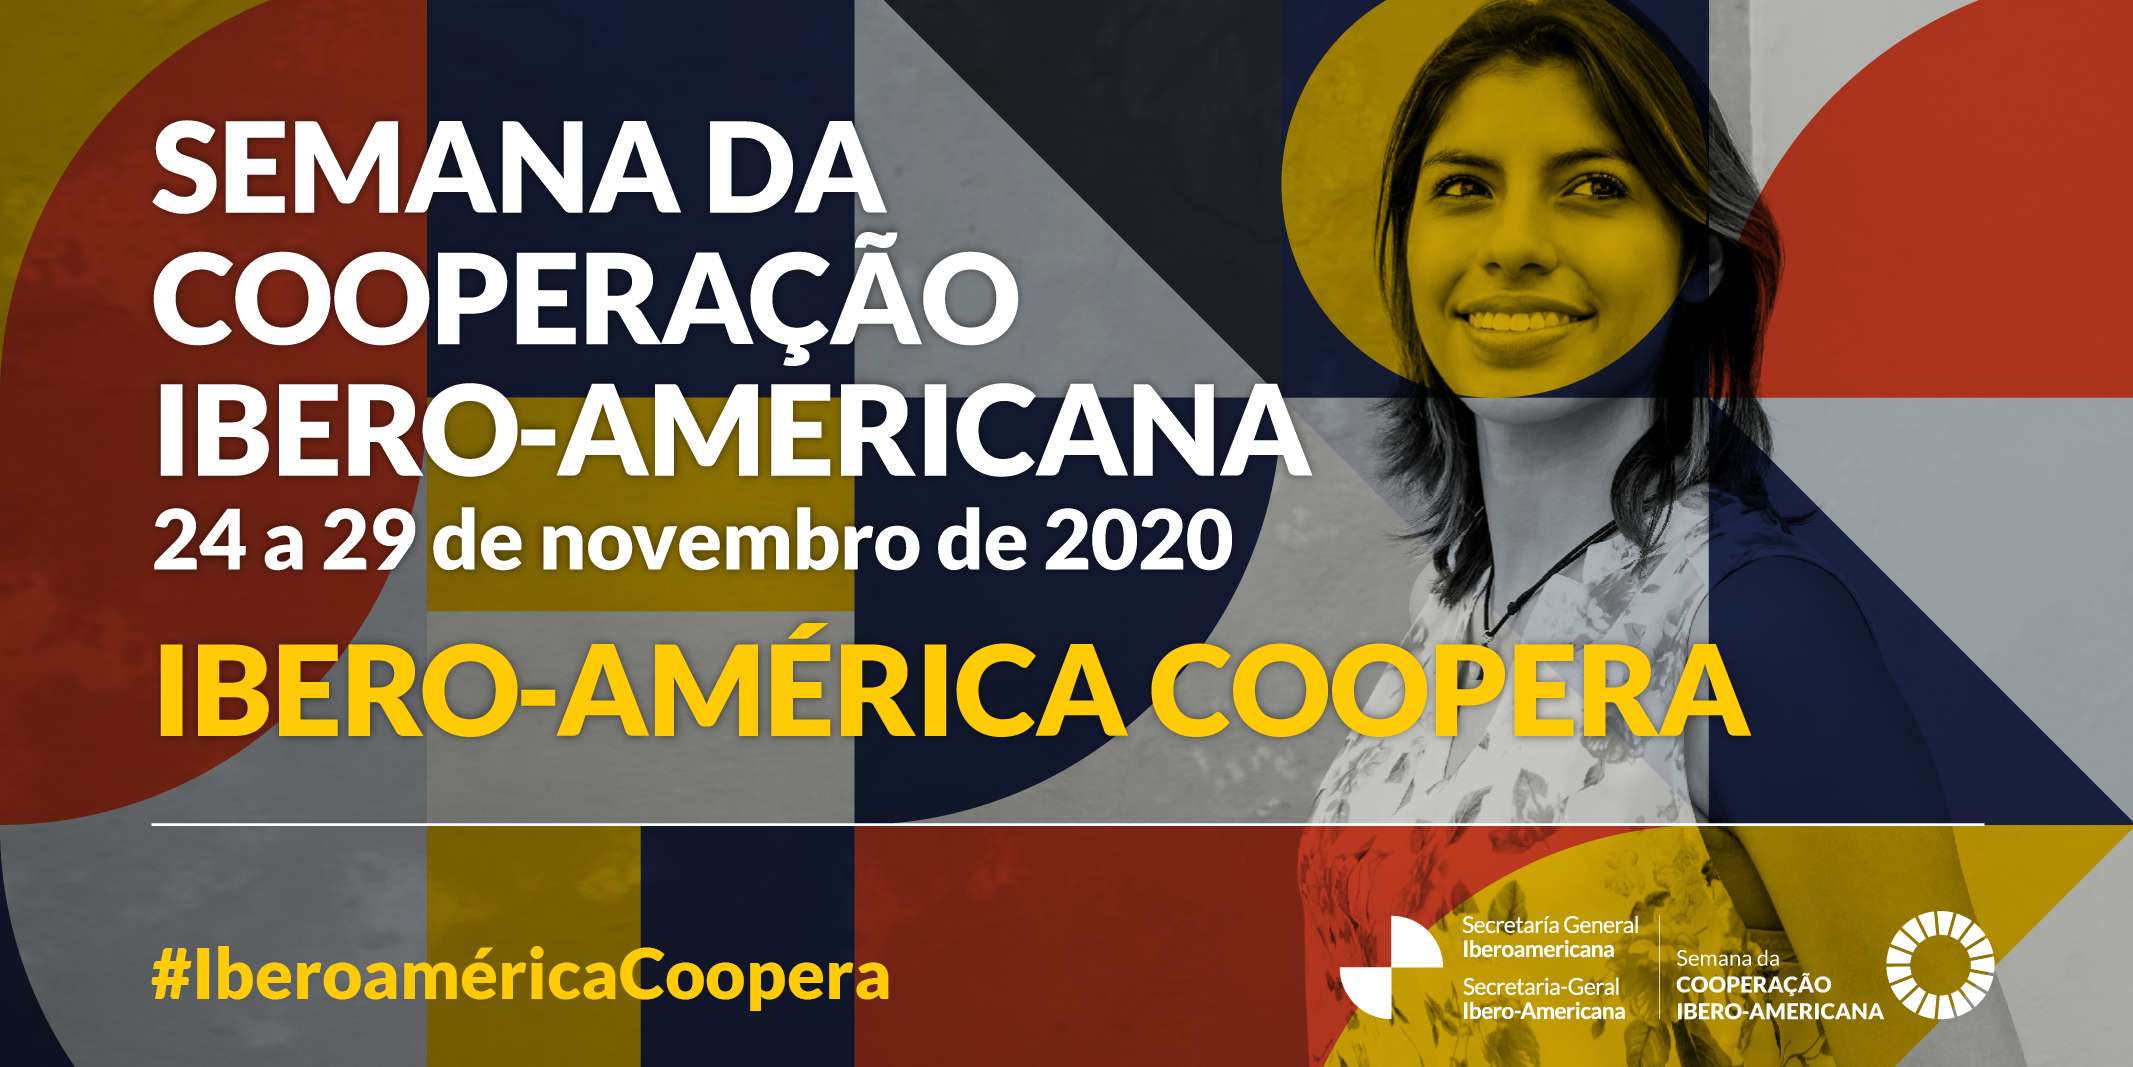 Semana da cooperação Ibero-Americana